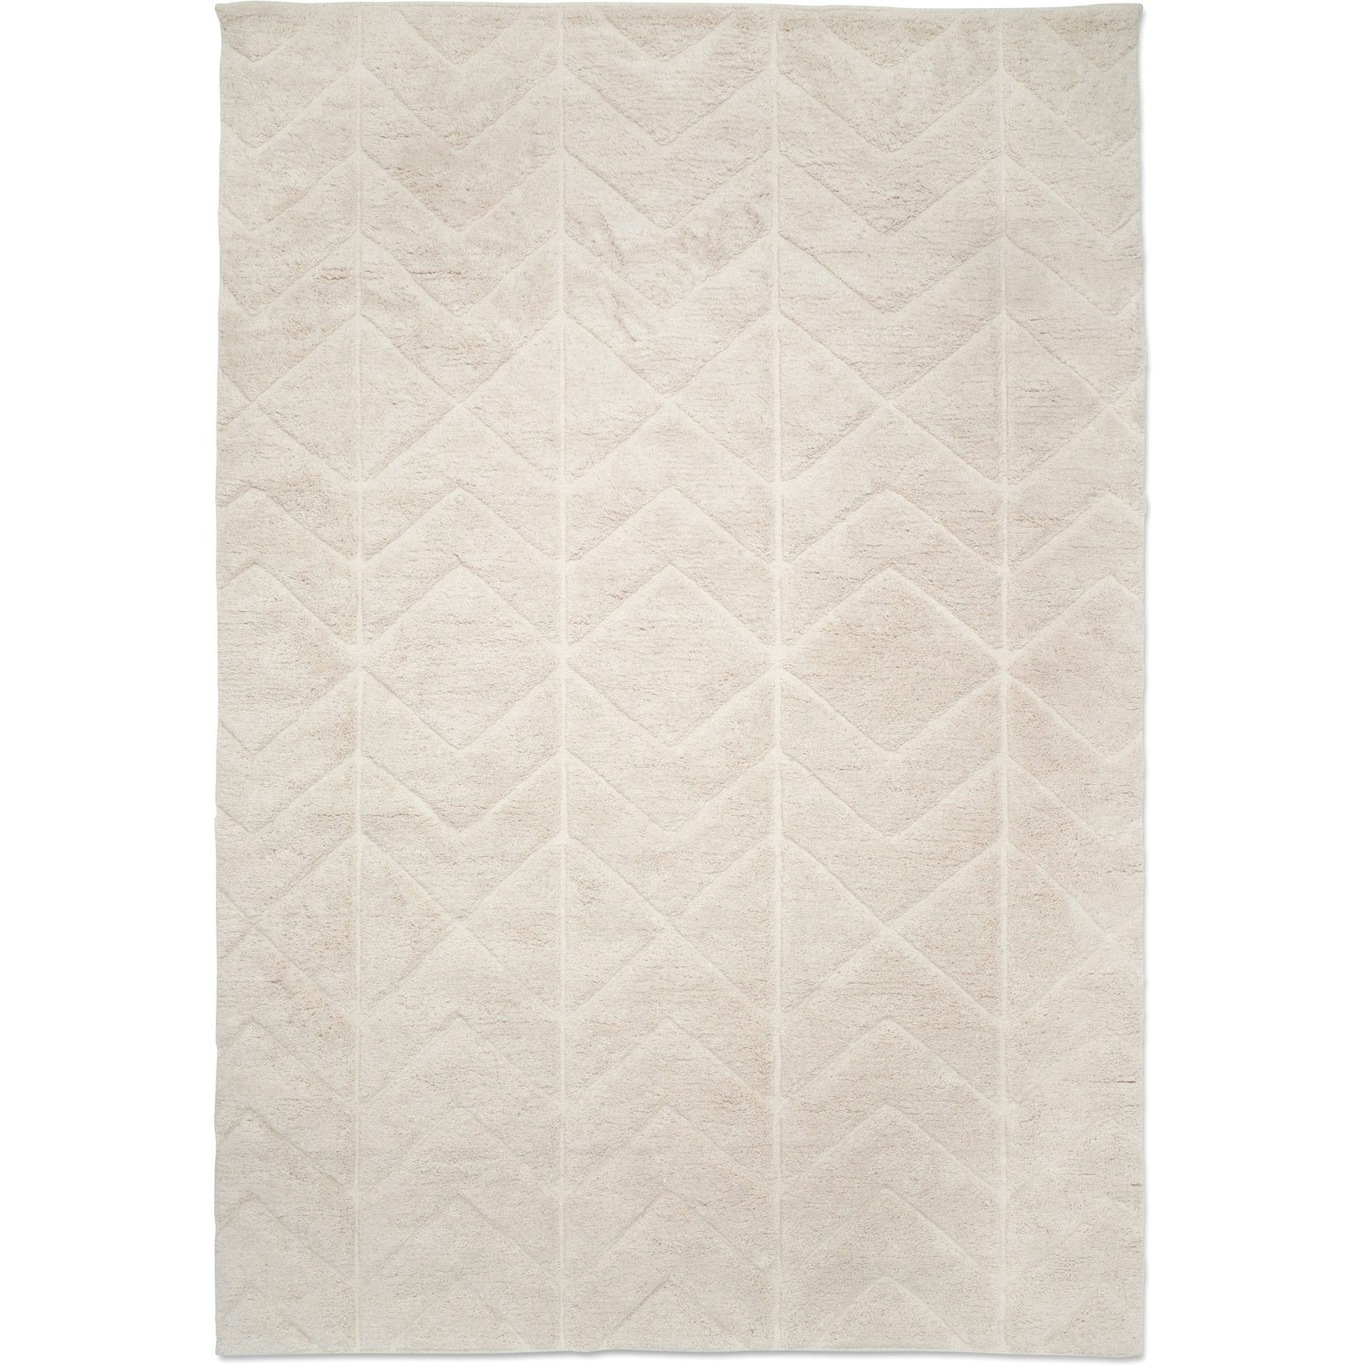 Soho Tæppe 170x230 cm, Ivory